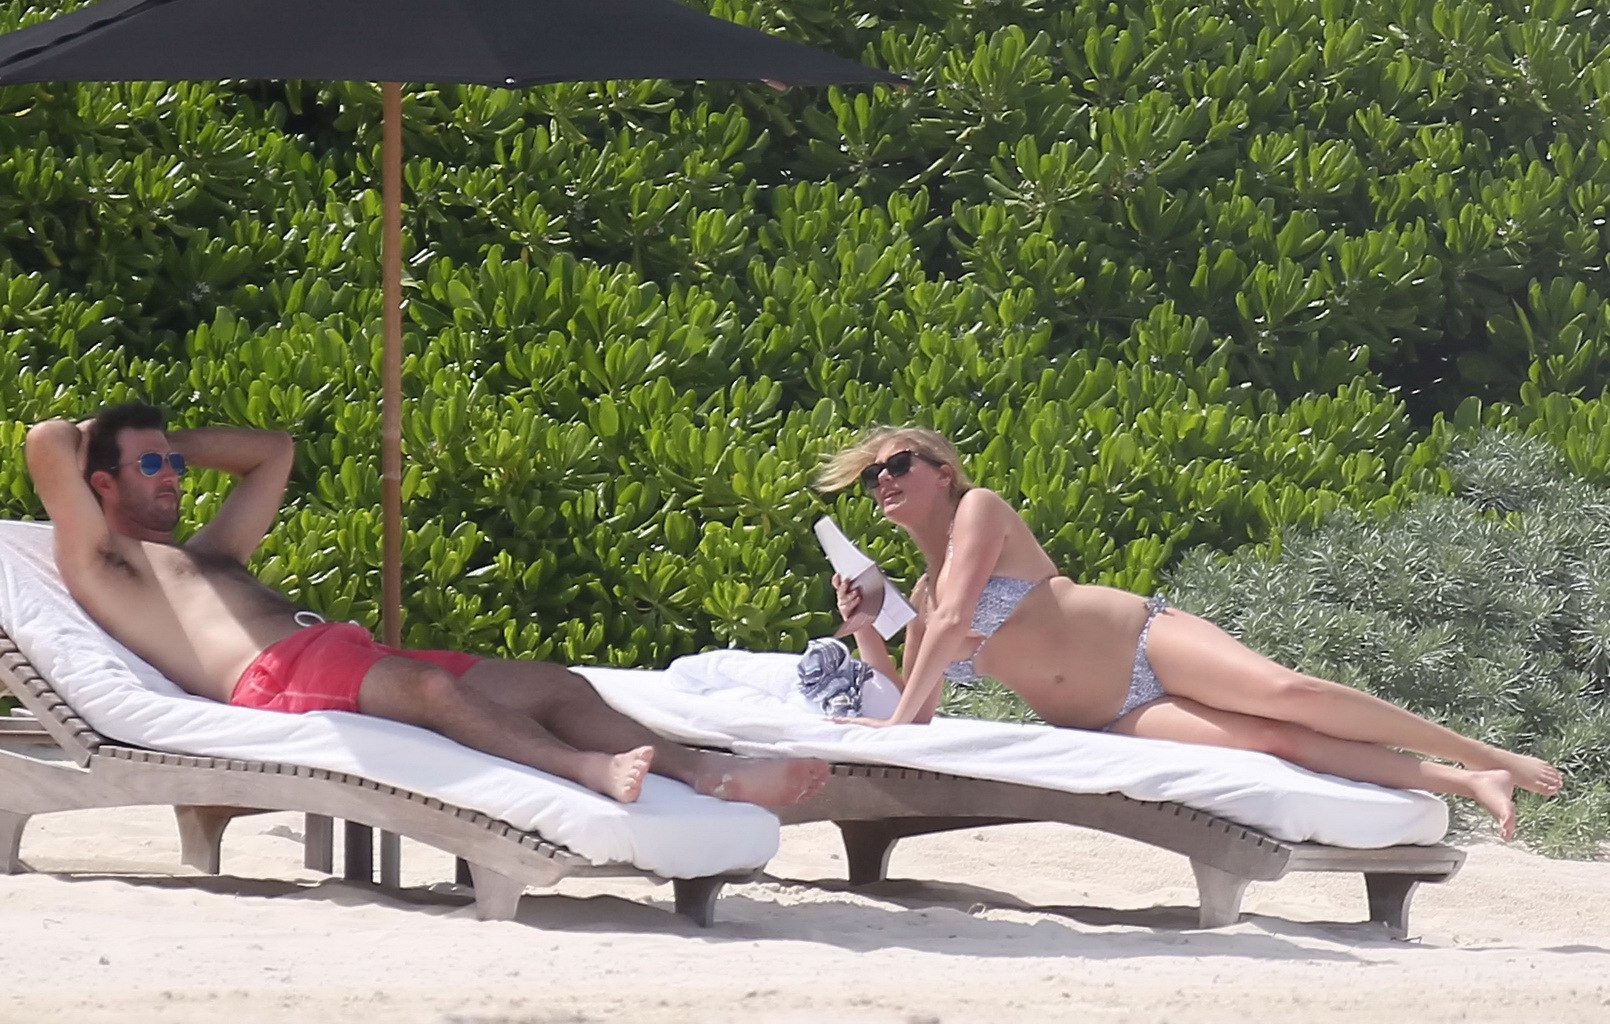 Kate upton bronceando sus melones lechosos y su culo en bikini plateado en la playa en mex
 #75190887